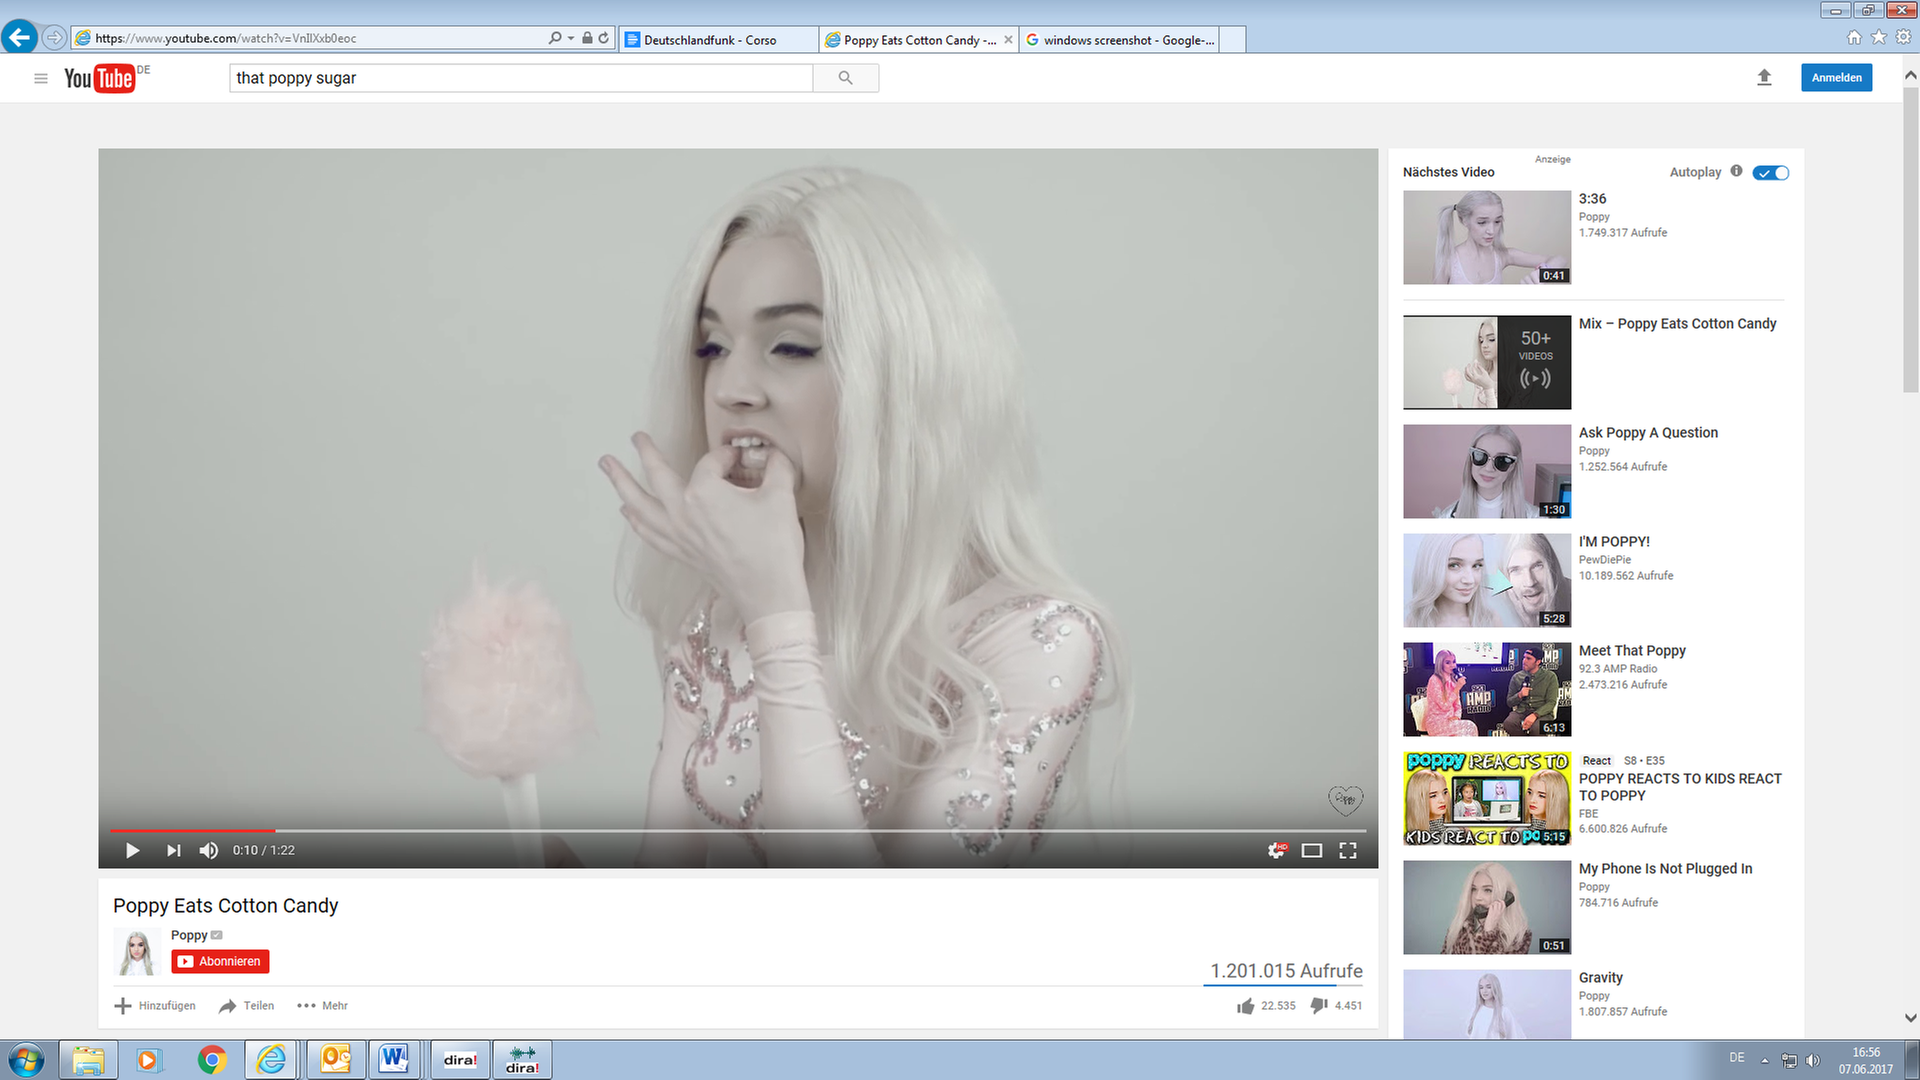 Ein Screenshot von Poppys YouTube Video "Poppy Eats Cotton Candy" - Poppy stopft sich Zuckerwatte in den Mund.